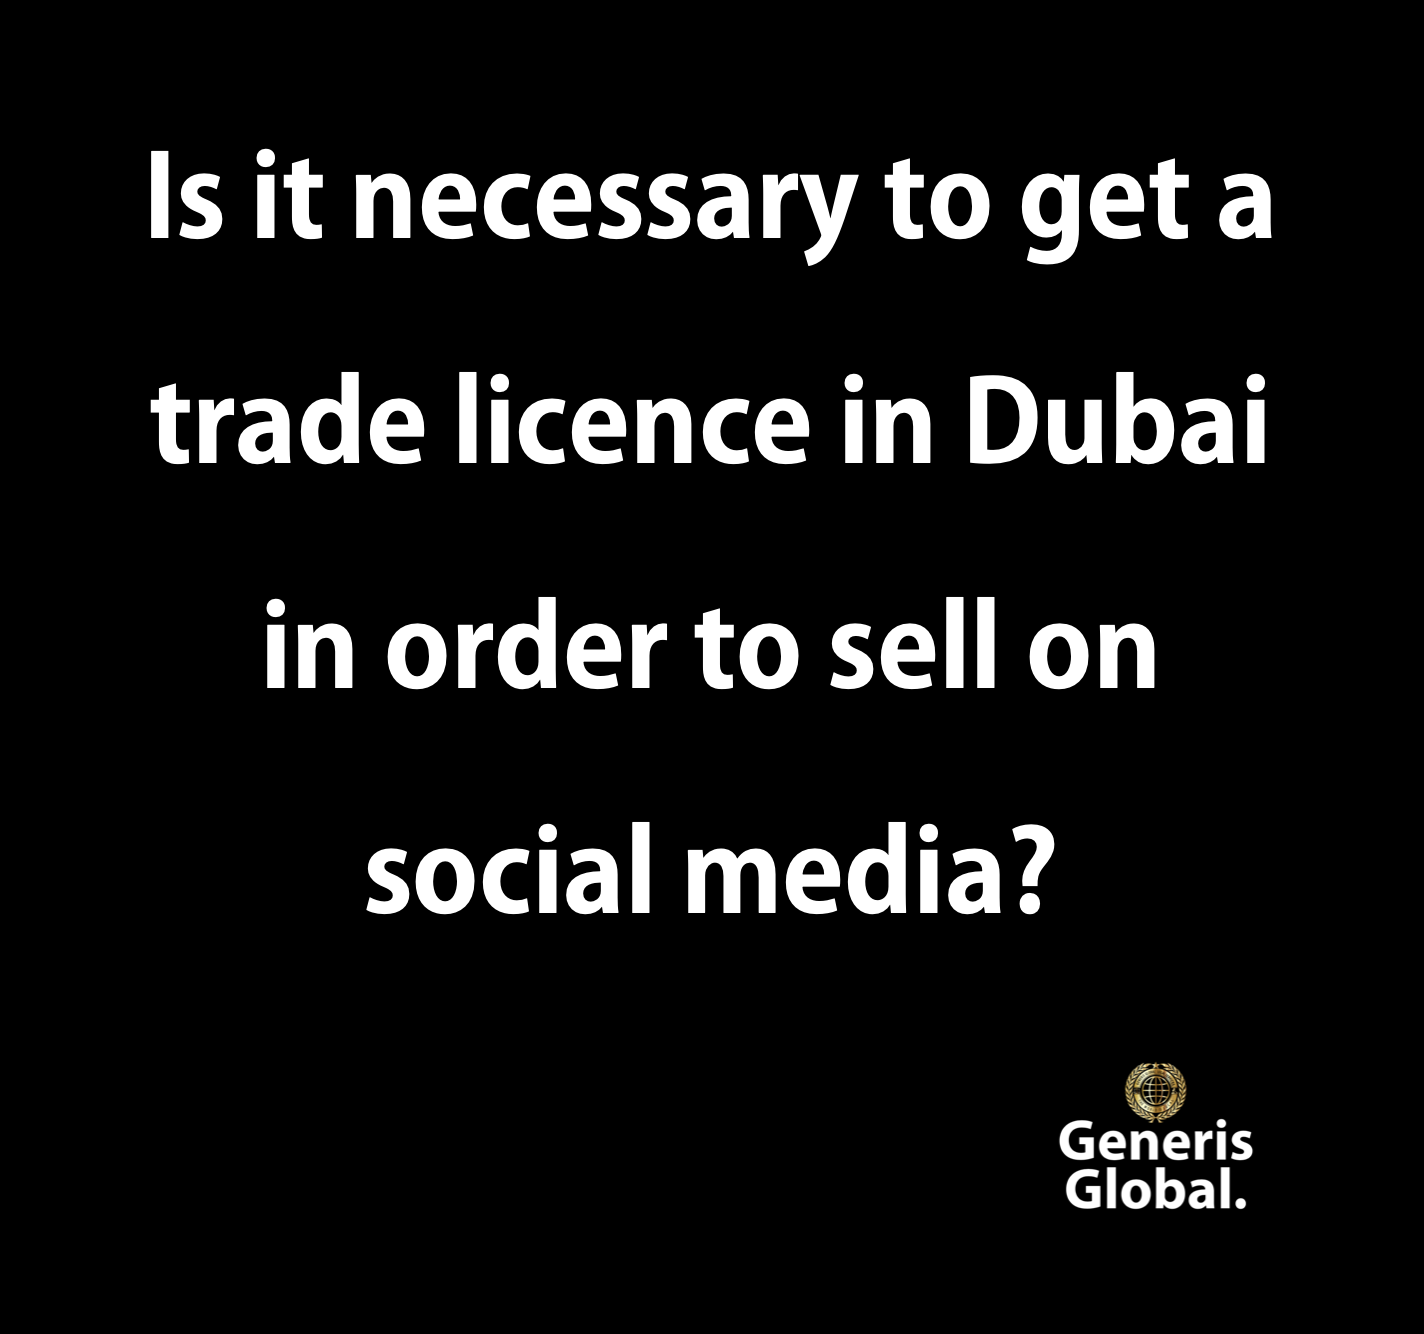  trade licence in Dubai